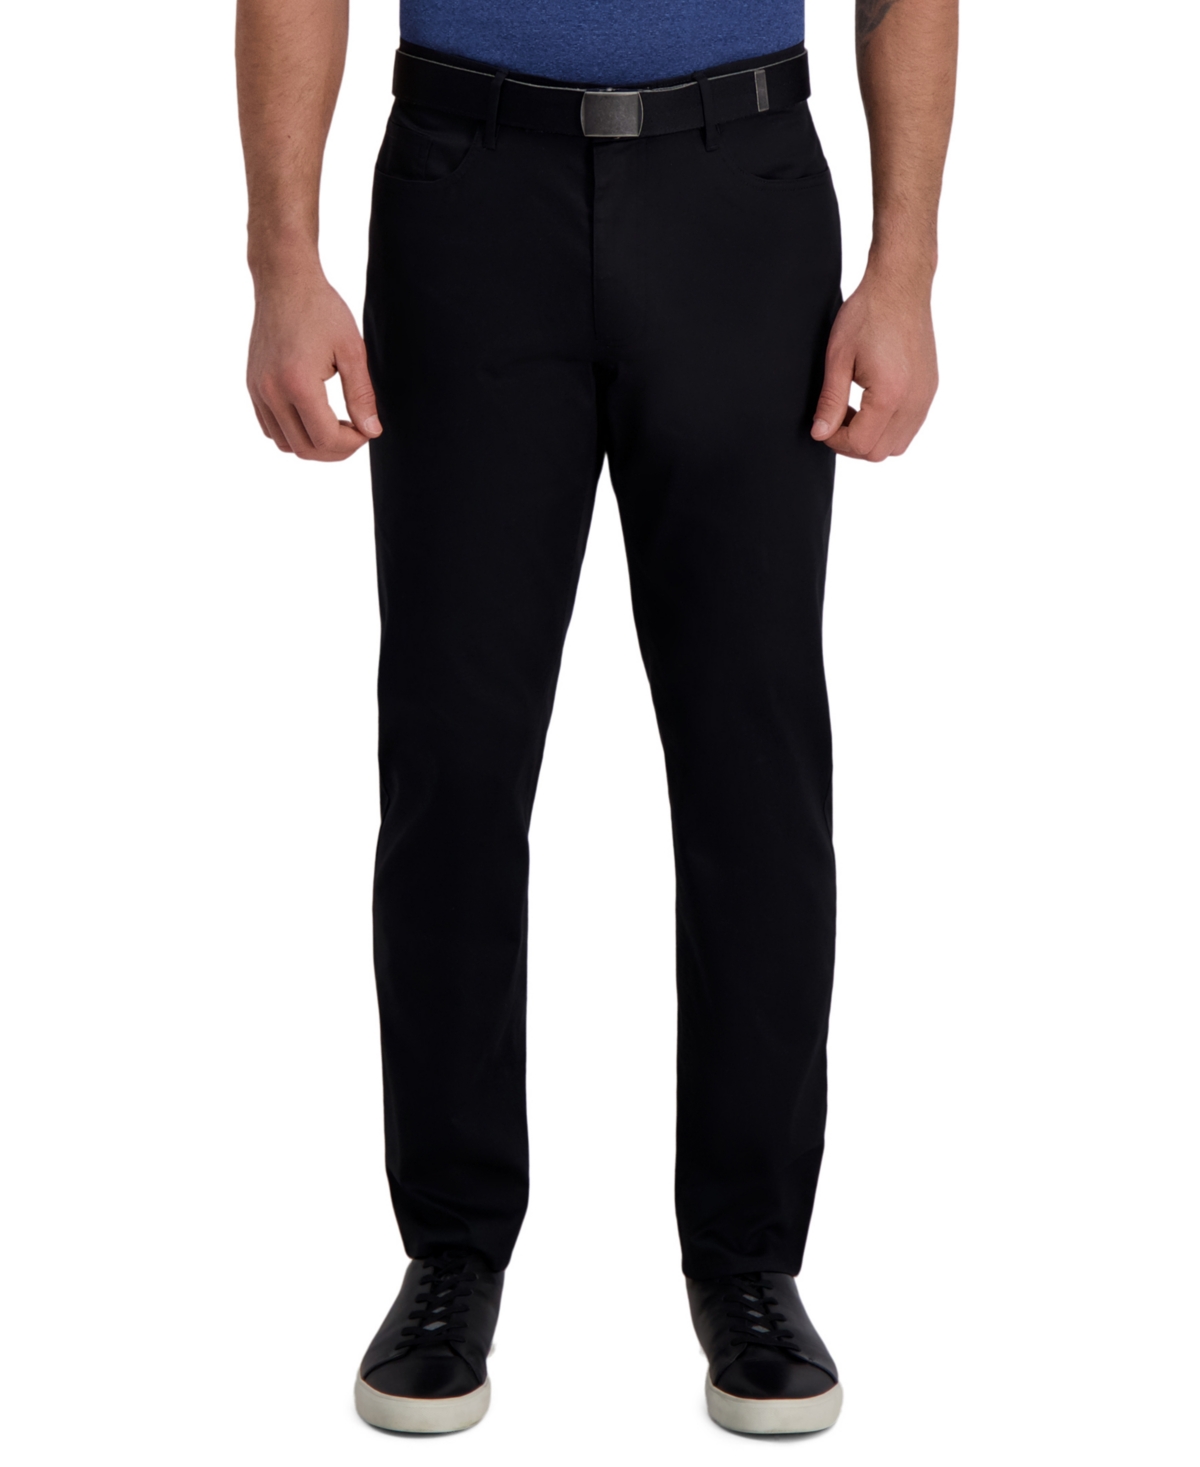 Men's The Active Series City Flex Traveler Slim-Fit Dress Pants - Black